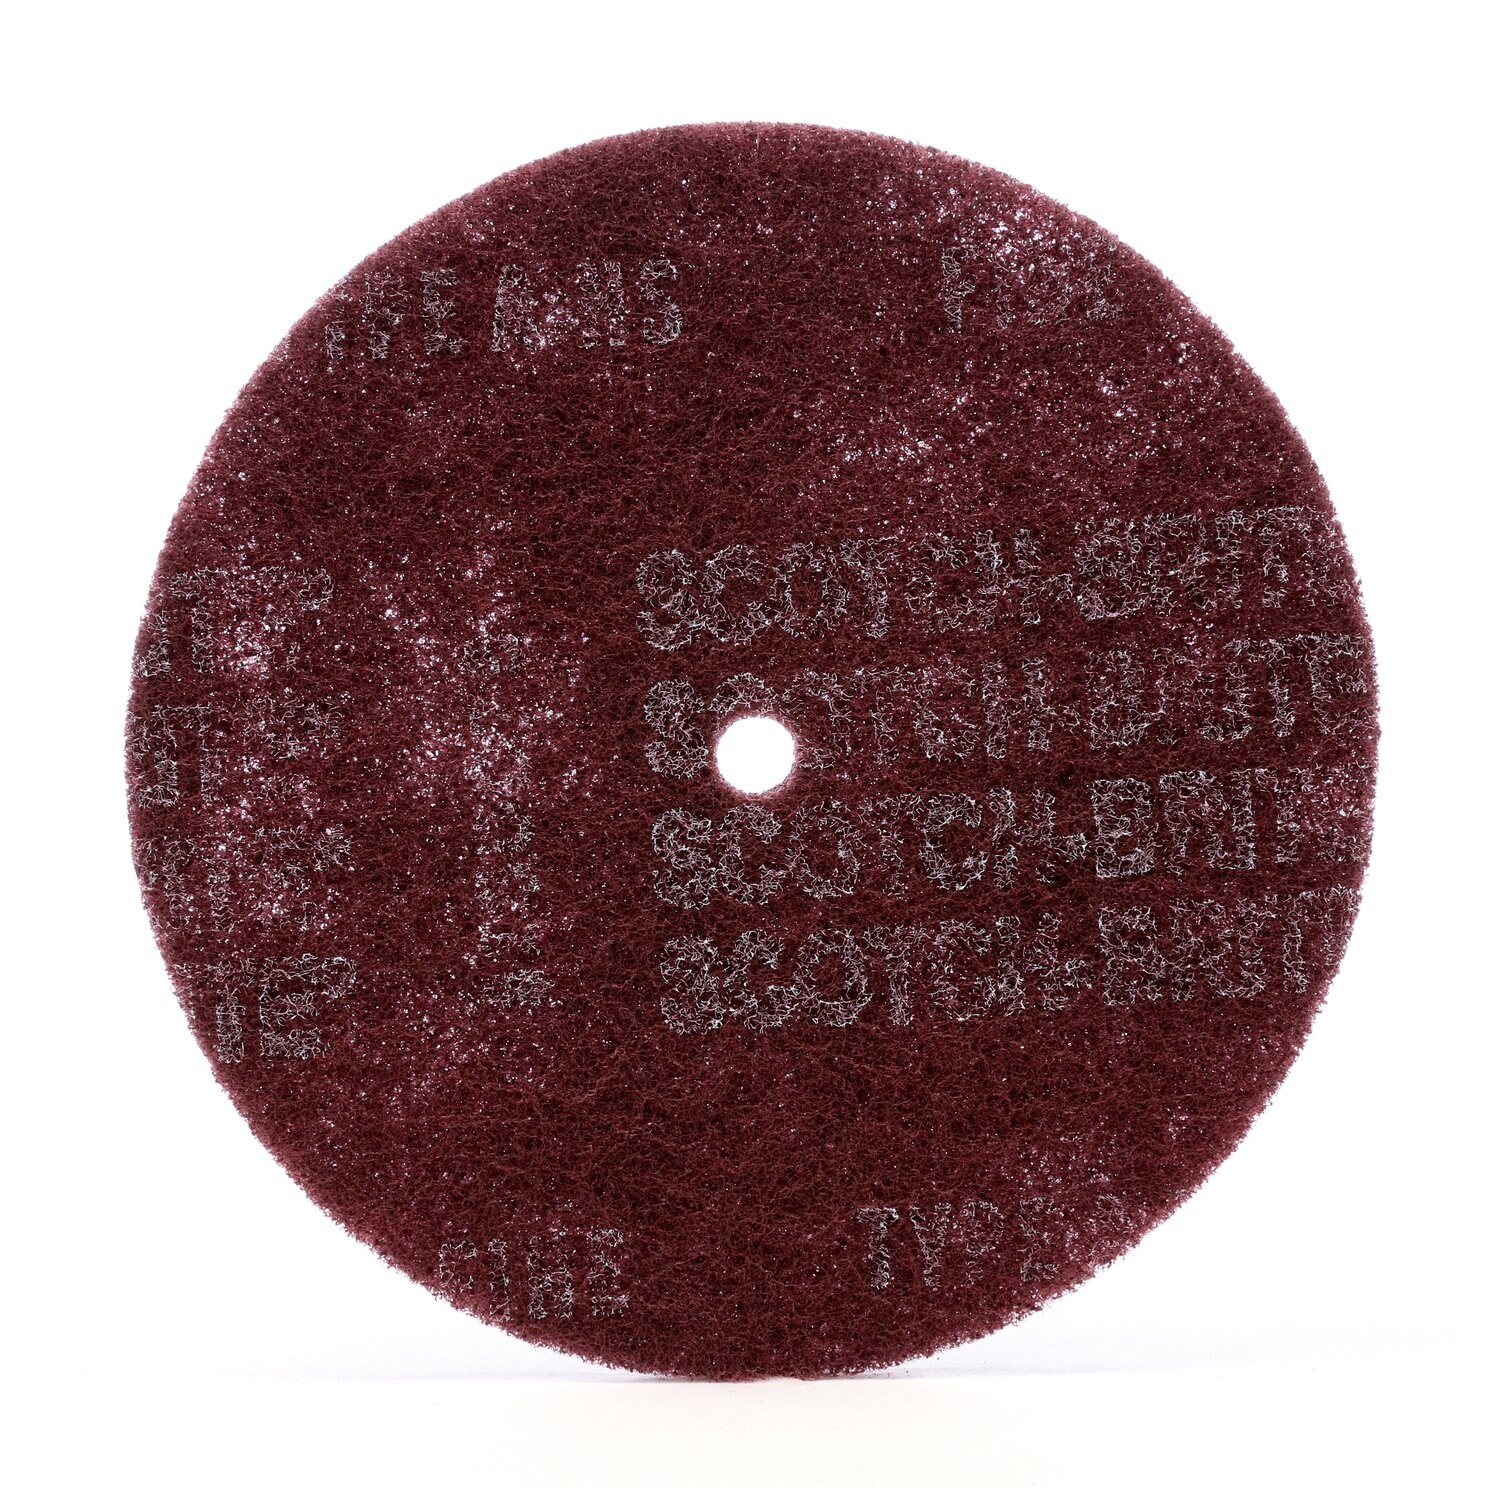 7000120947 - Scotch-Brite High Strength Disc, HS-DC, A/O Very Fine, 6 in x 1/4 in,
100 ea/Case